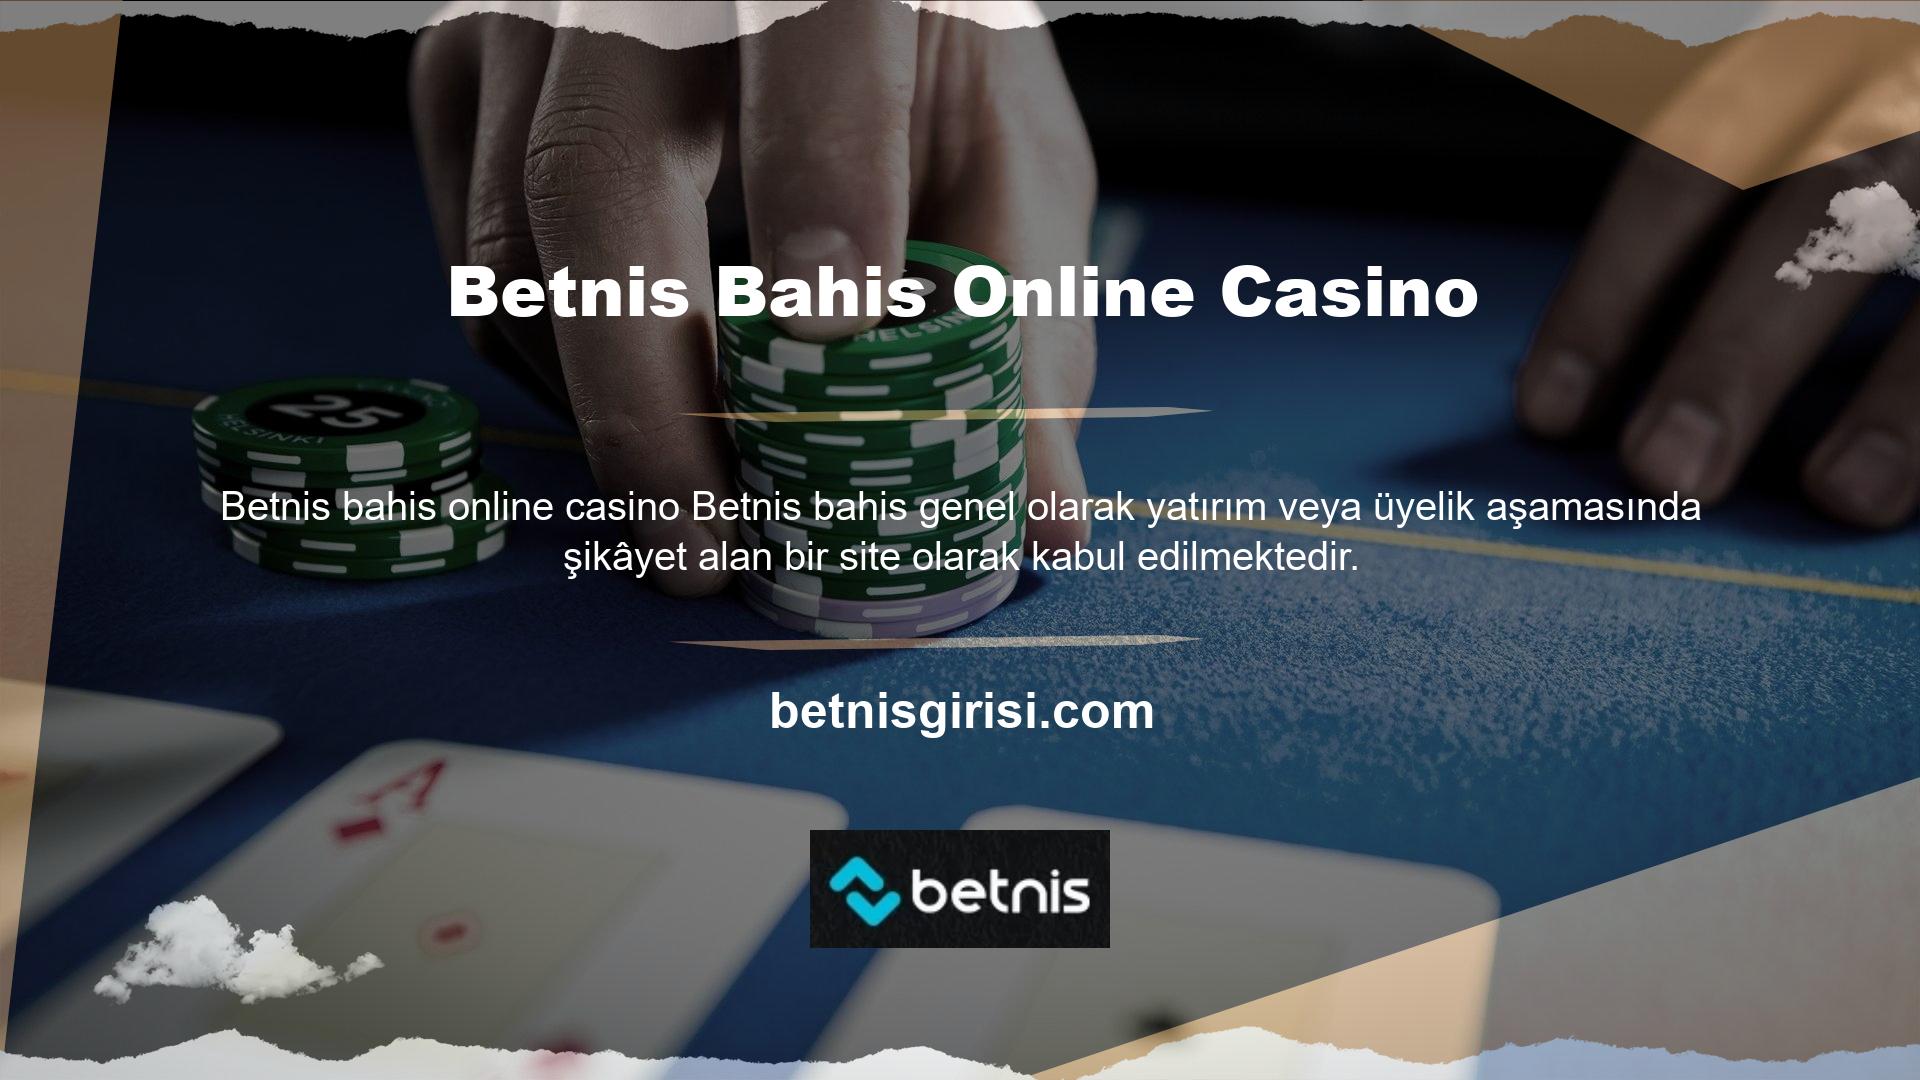 Kayıt aşamasında şikâyet kabulünün temel amaçlarından biri de kayıt yaşının 18 Betnis bahis online casino yaş ile sınırlandırılmasıdır